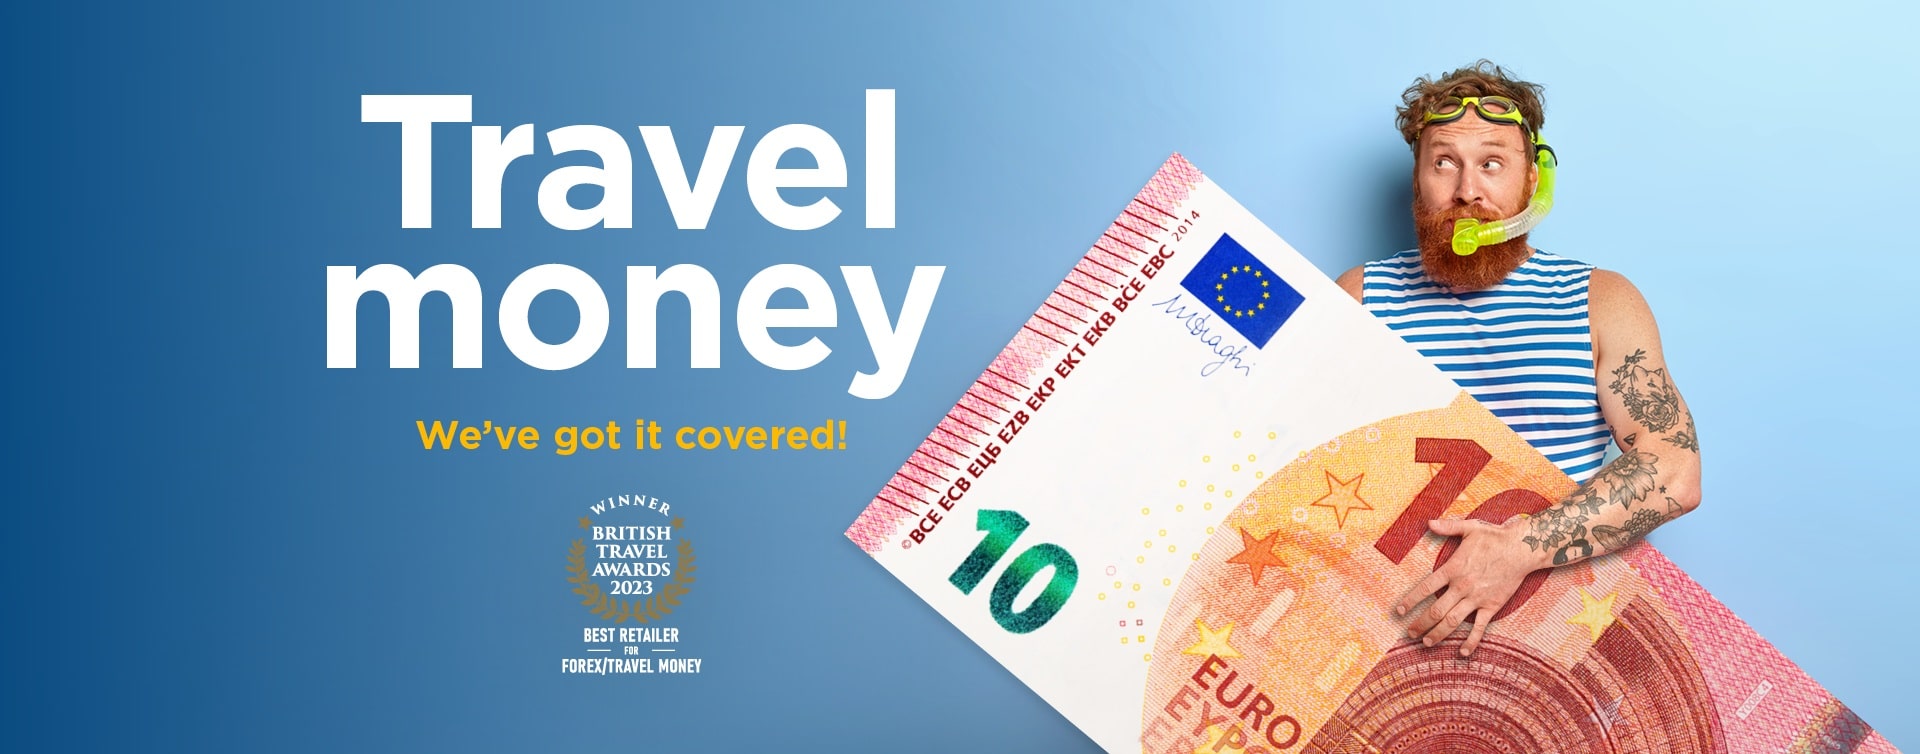 Travel Money